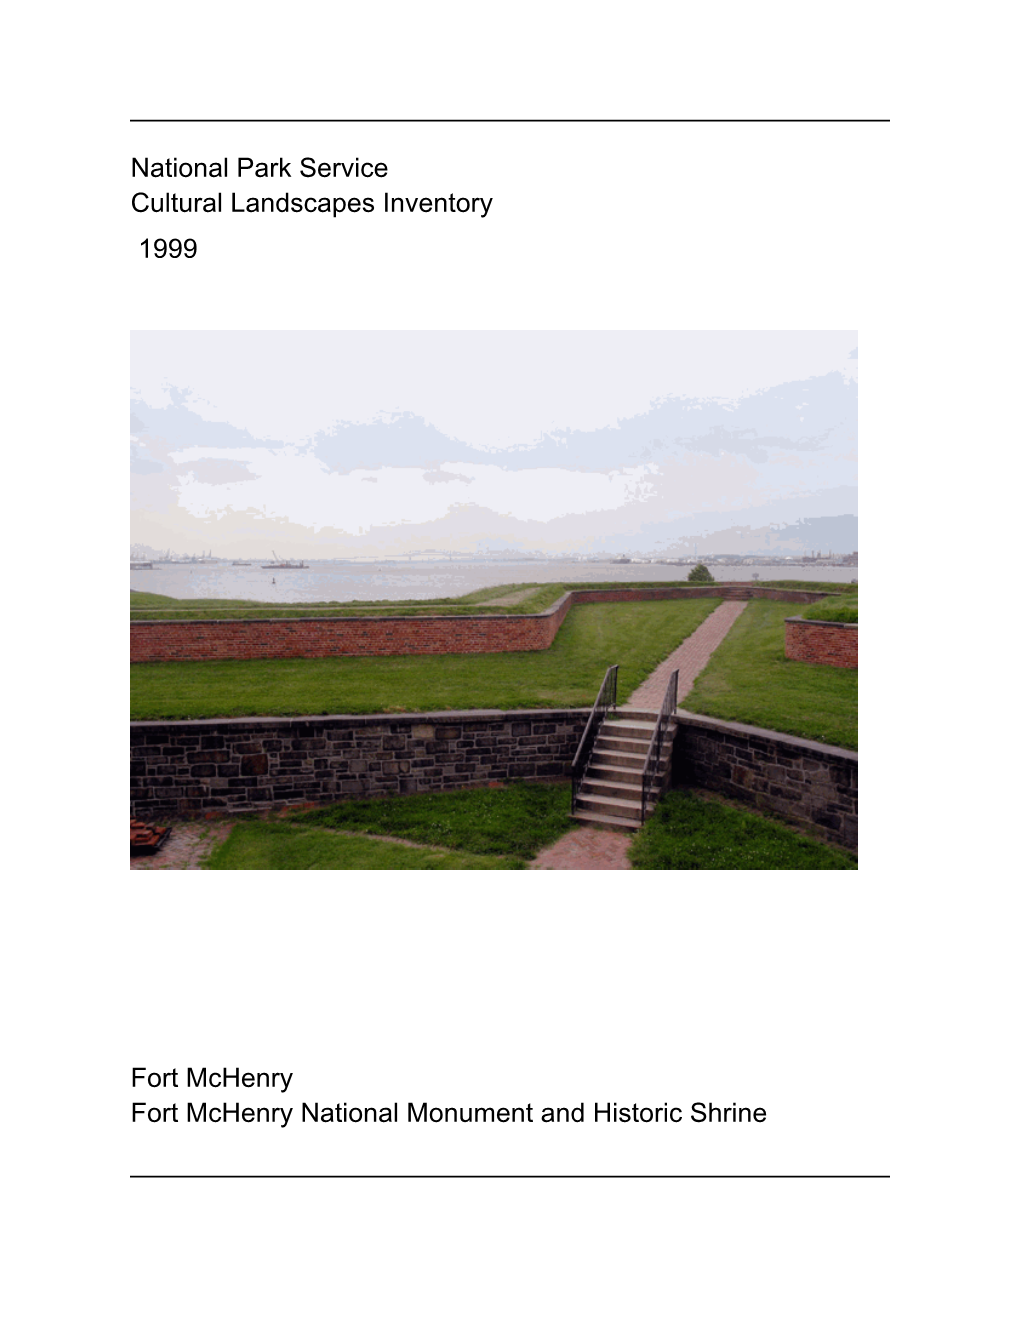 National Park Service Cultural Landscapes Inventory Fort